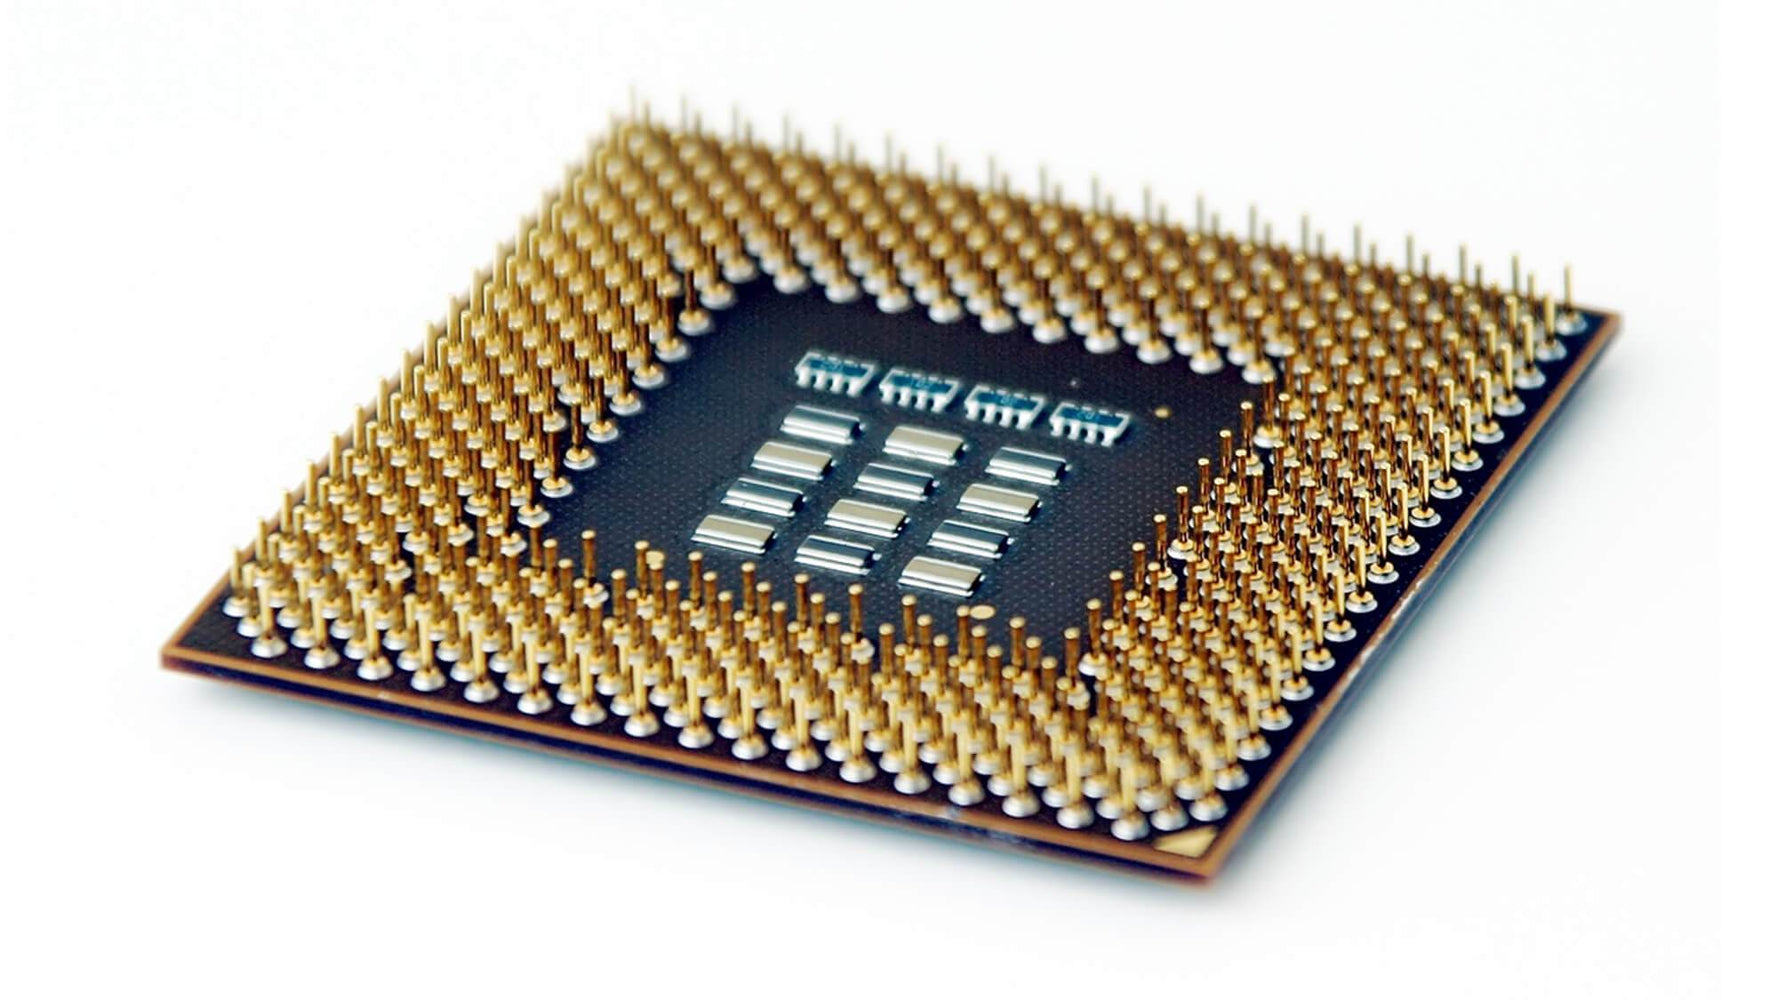 762446-001 - HP 2.40GHz 8.0GT/s QPI 20MB L3 Cache Socket LGA2011-3 Intel Xeon E5-2630V3 8-Core Processor for ProLiant Gen9 Servers